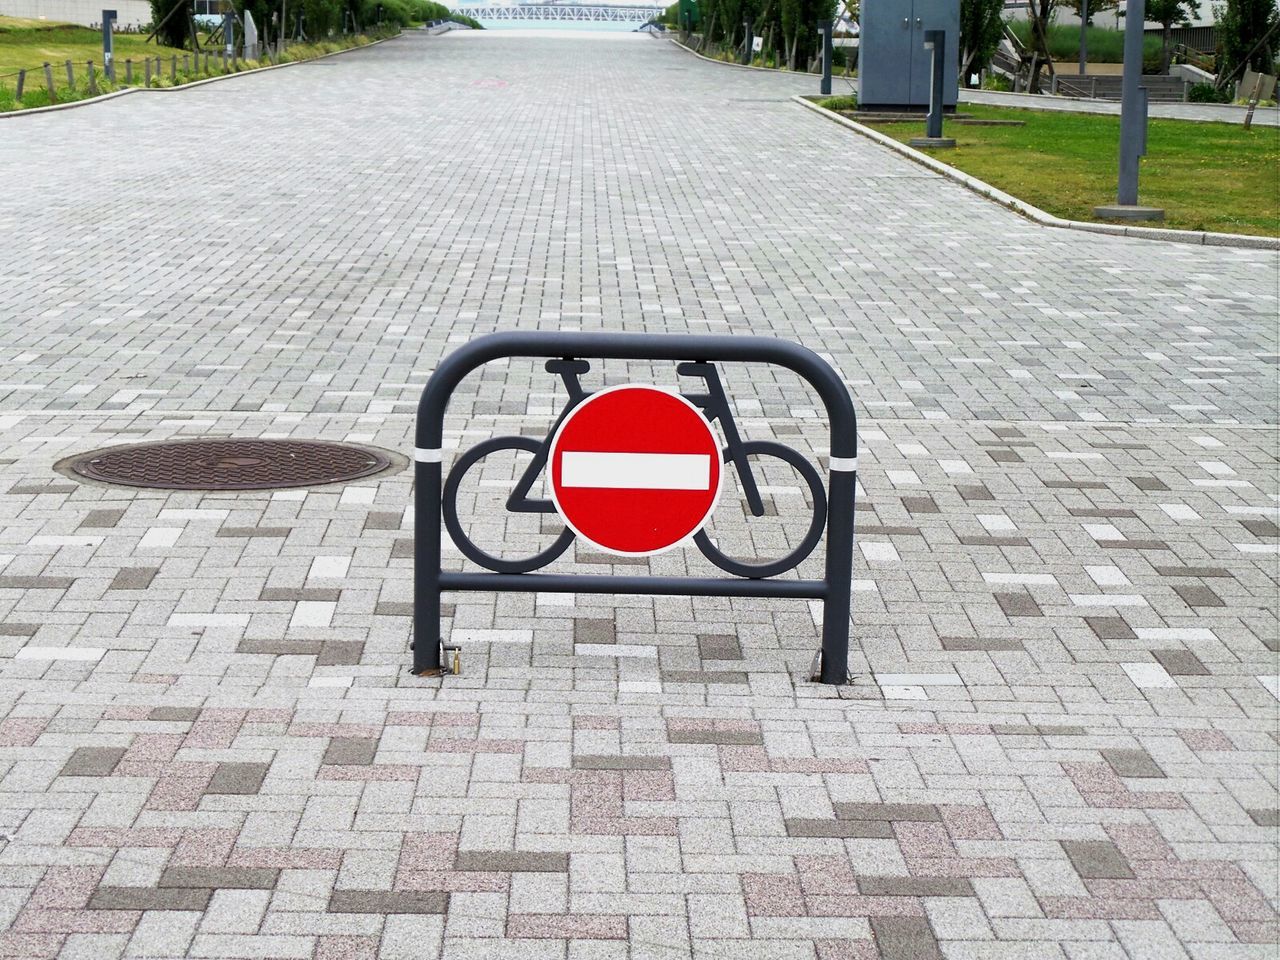 Do not enter sign at bicycle lane